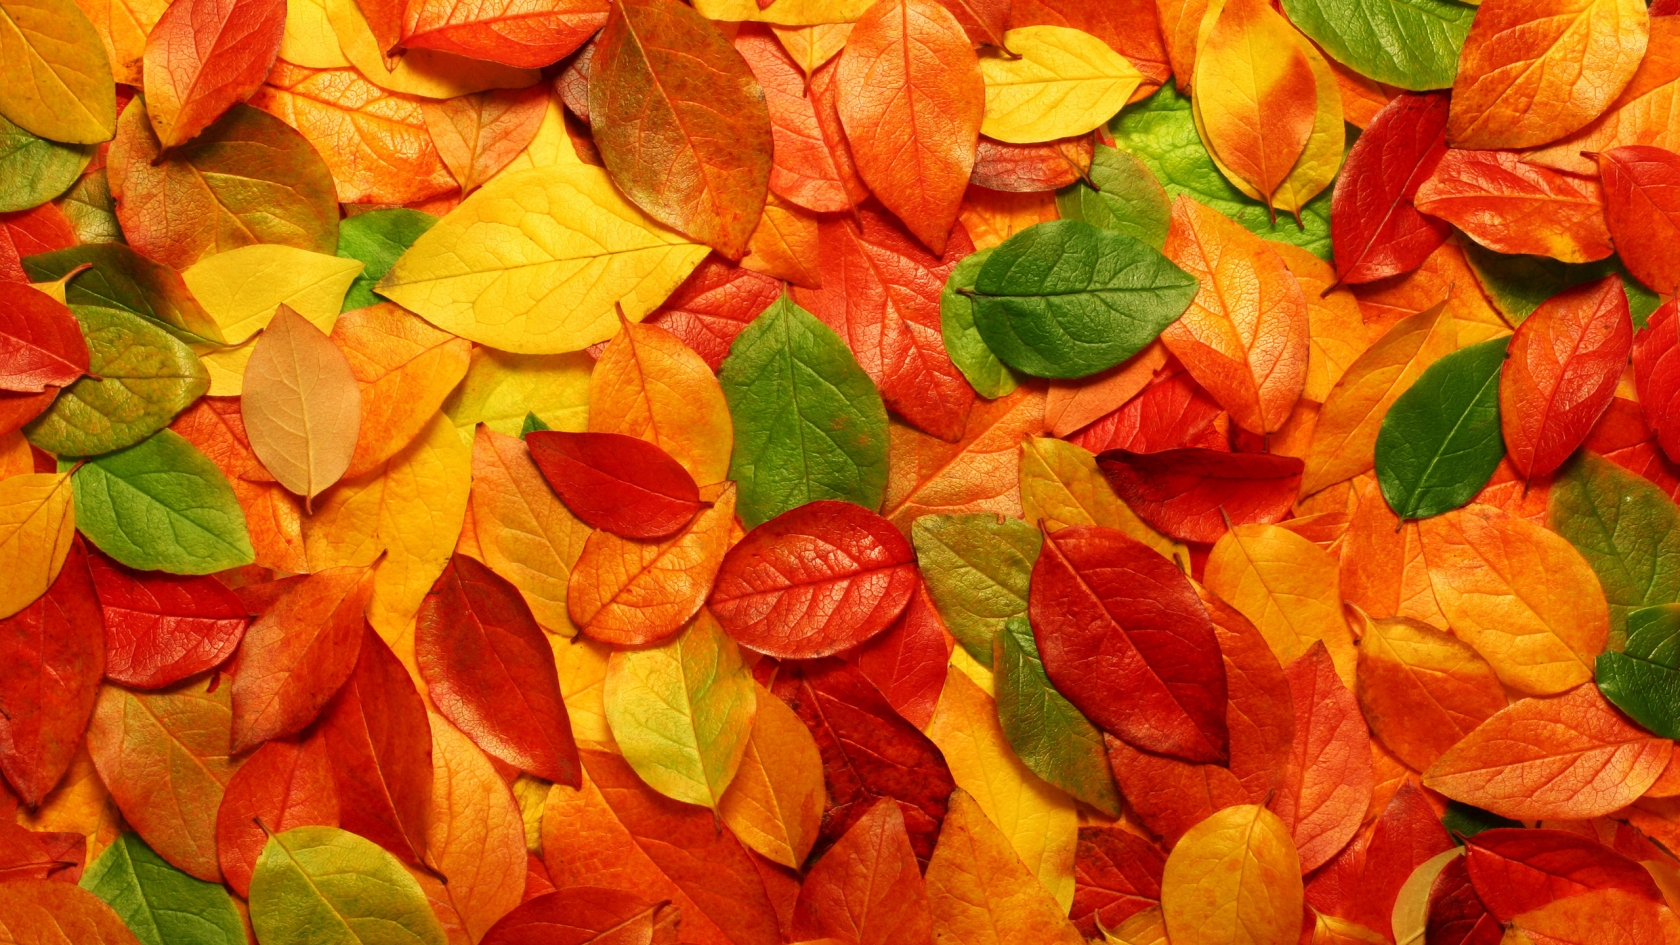 Autumn carpet of leaves for 1680 x 945 HDTV resolution